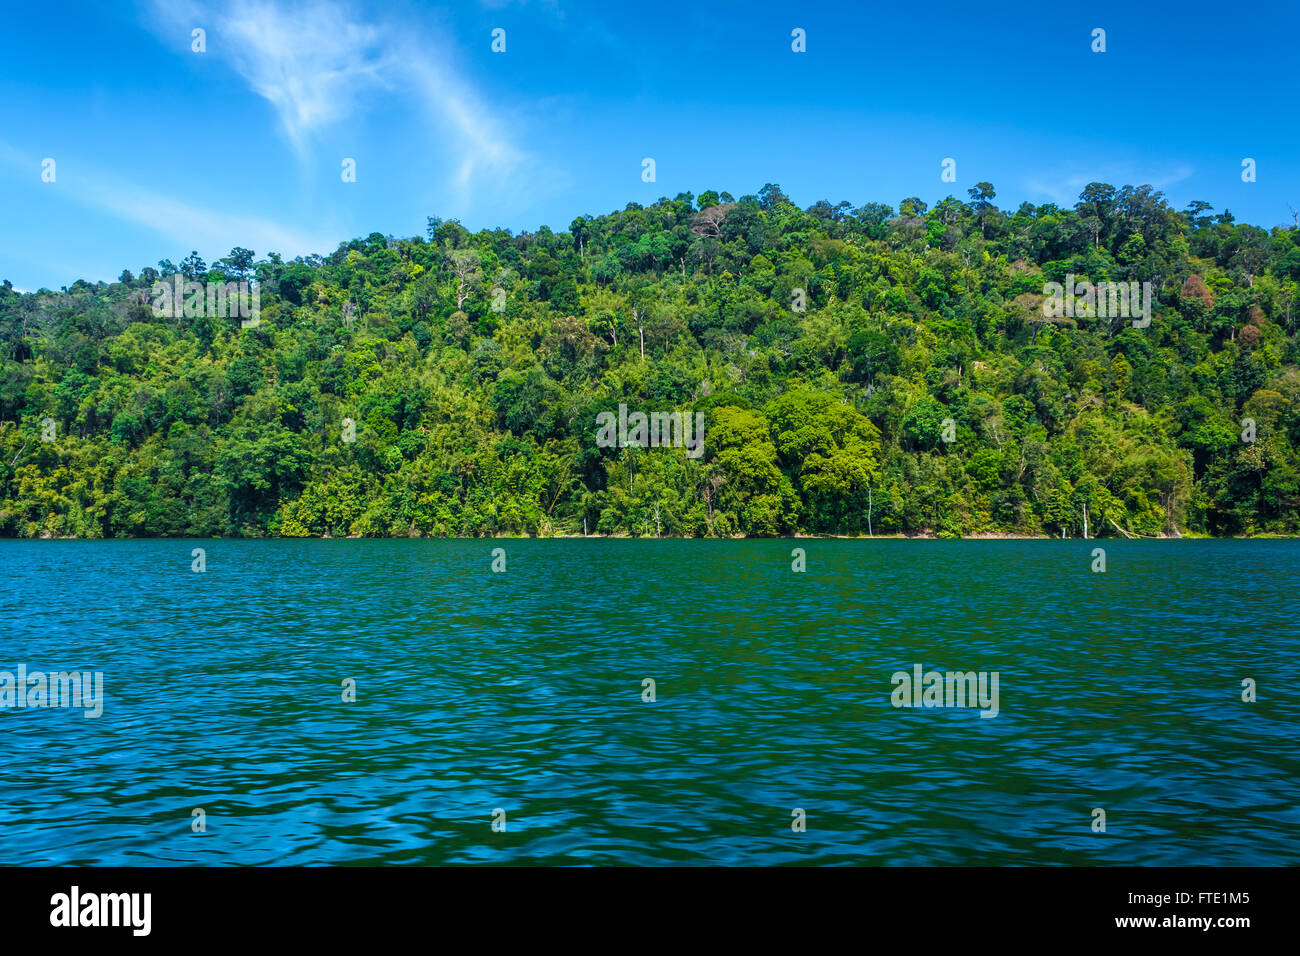 La ligne d'arbres de jungle tropicale dans l'île de ciel bleu clair. Bandes de champ, lac Temenggor. La Malaisie Banque D'Images